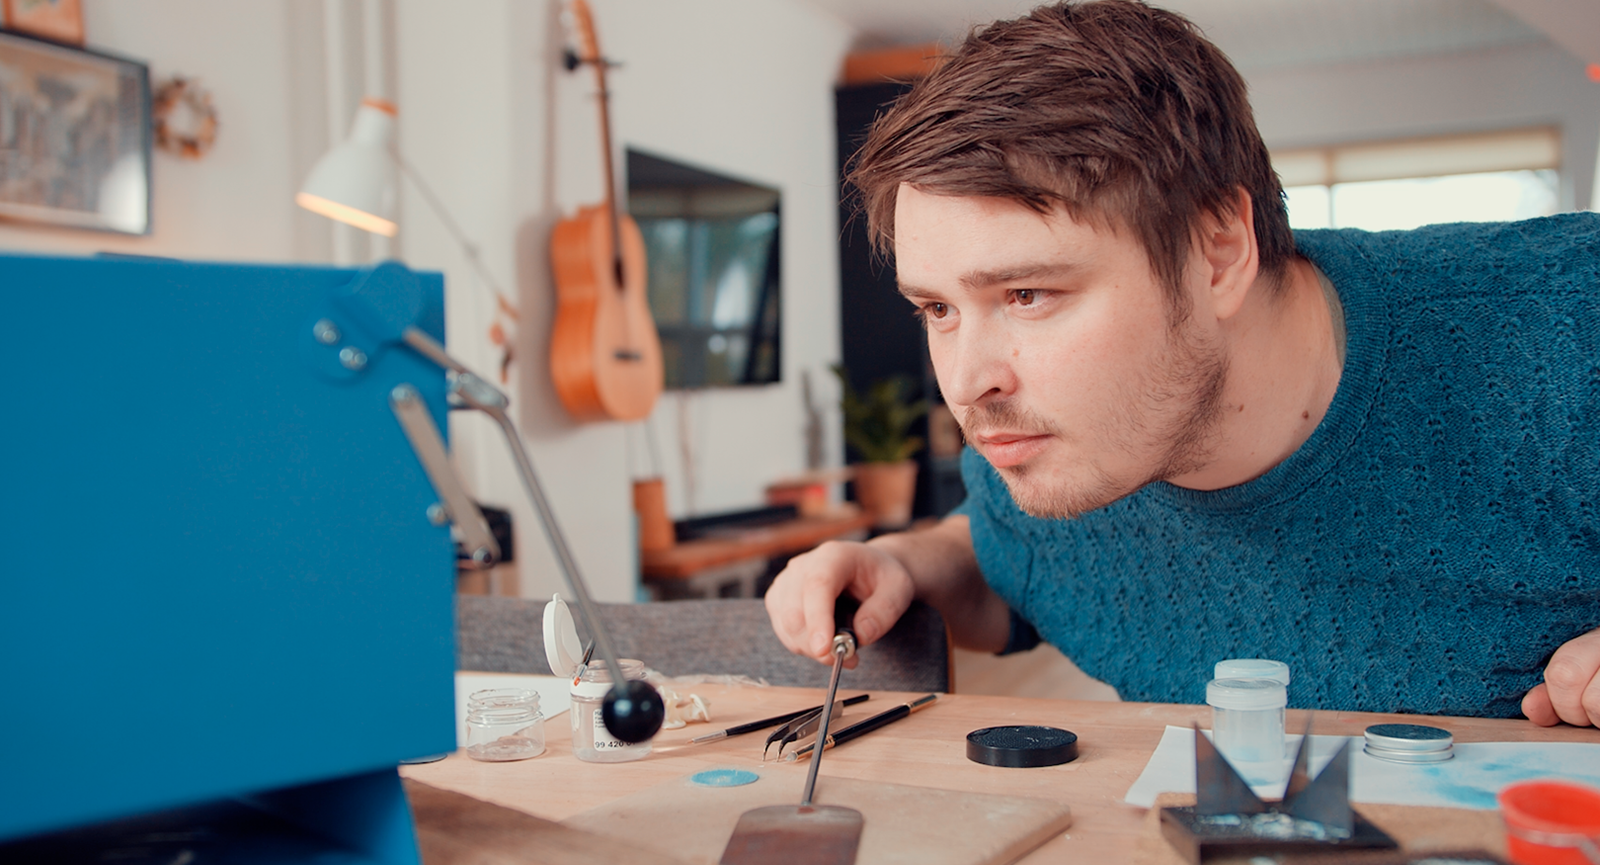 Iværksætter Kasper Reisner læner sig ind over et arbejdsbord fyldt med teknisk udstyr til at fremstille urer og kigger koncentreret på en lille lyseblå ovn.